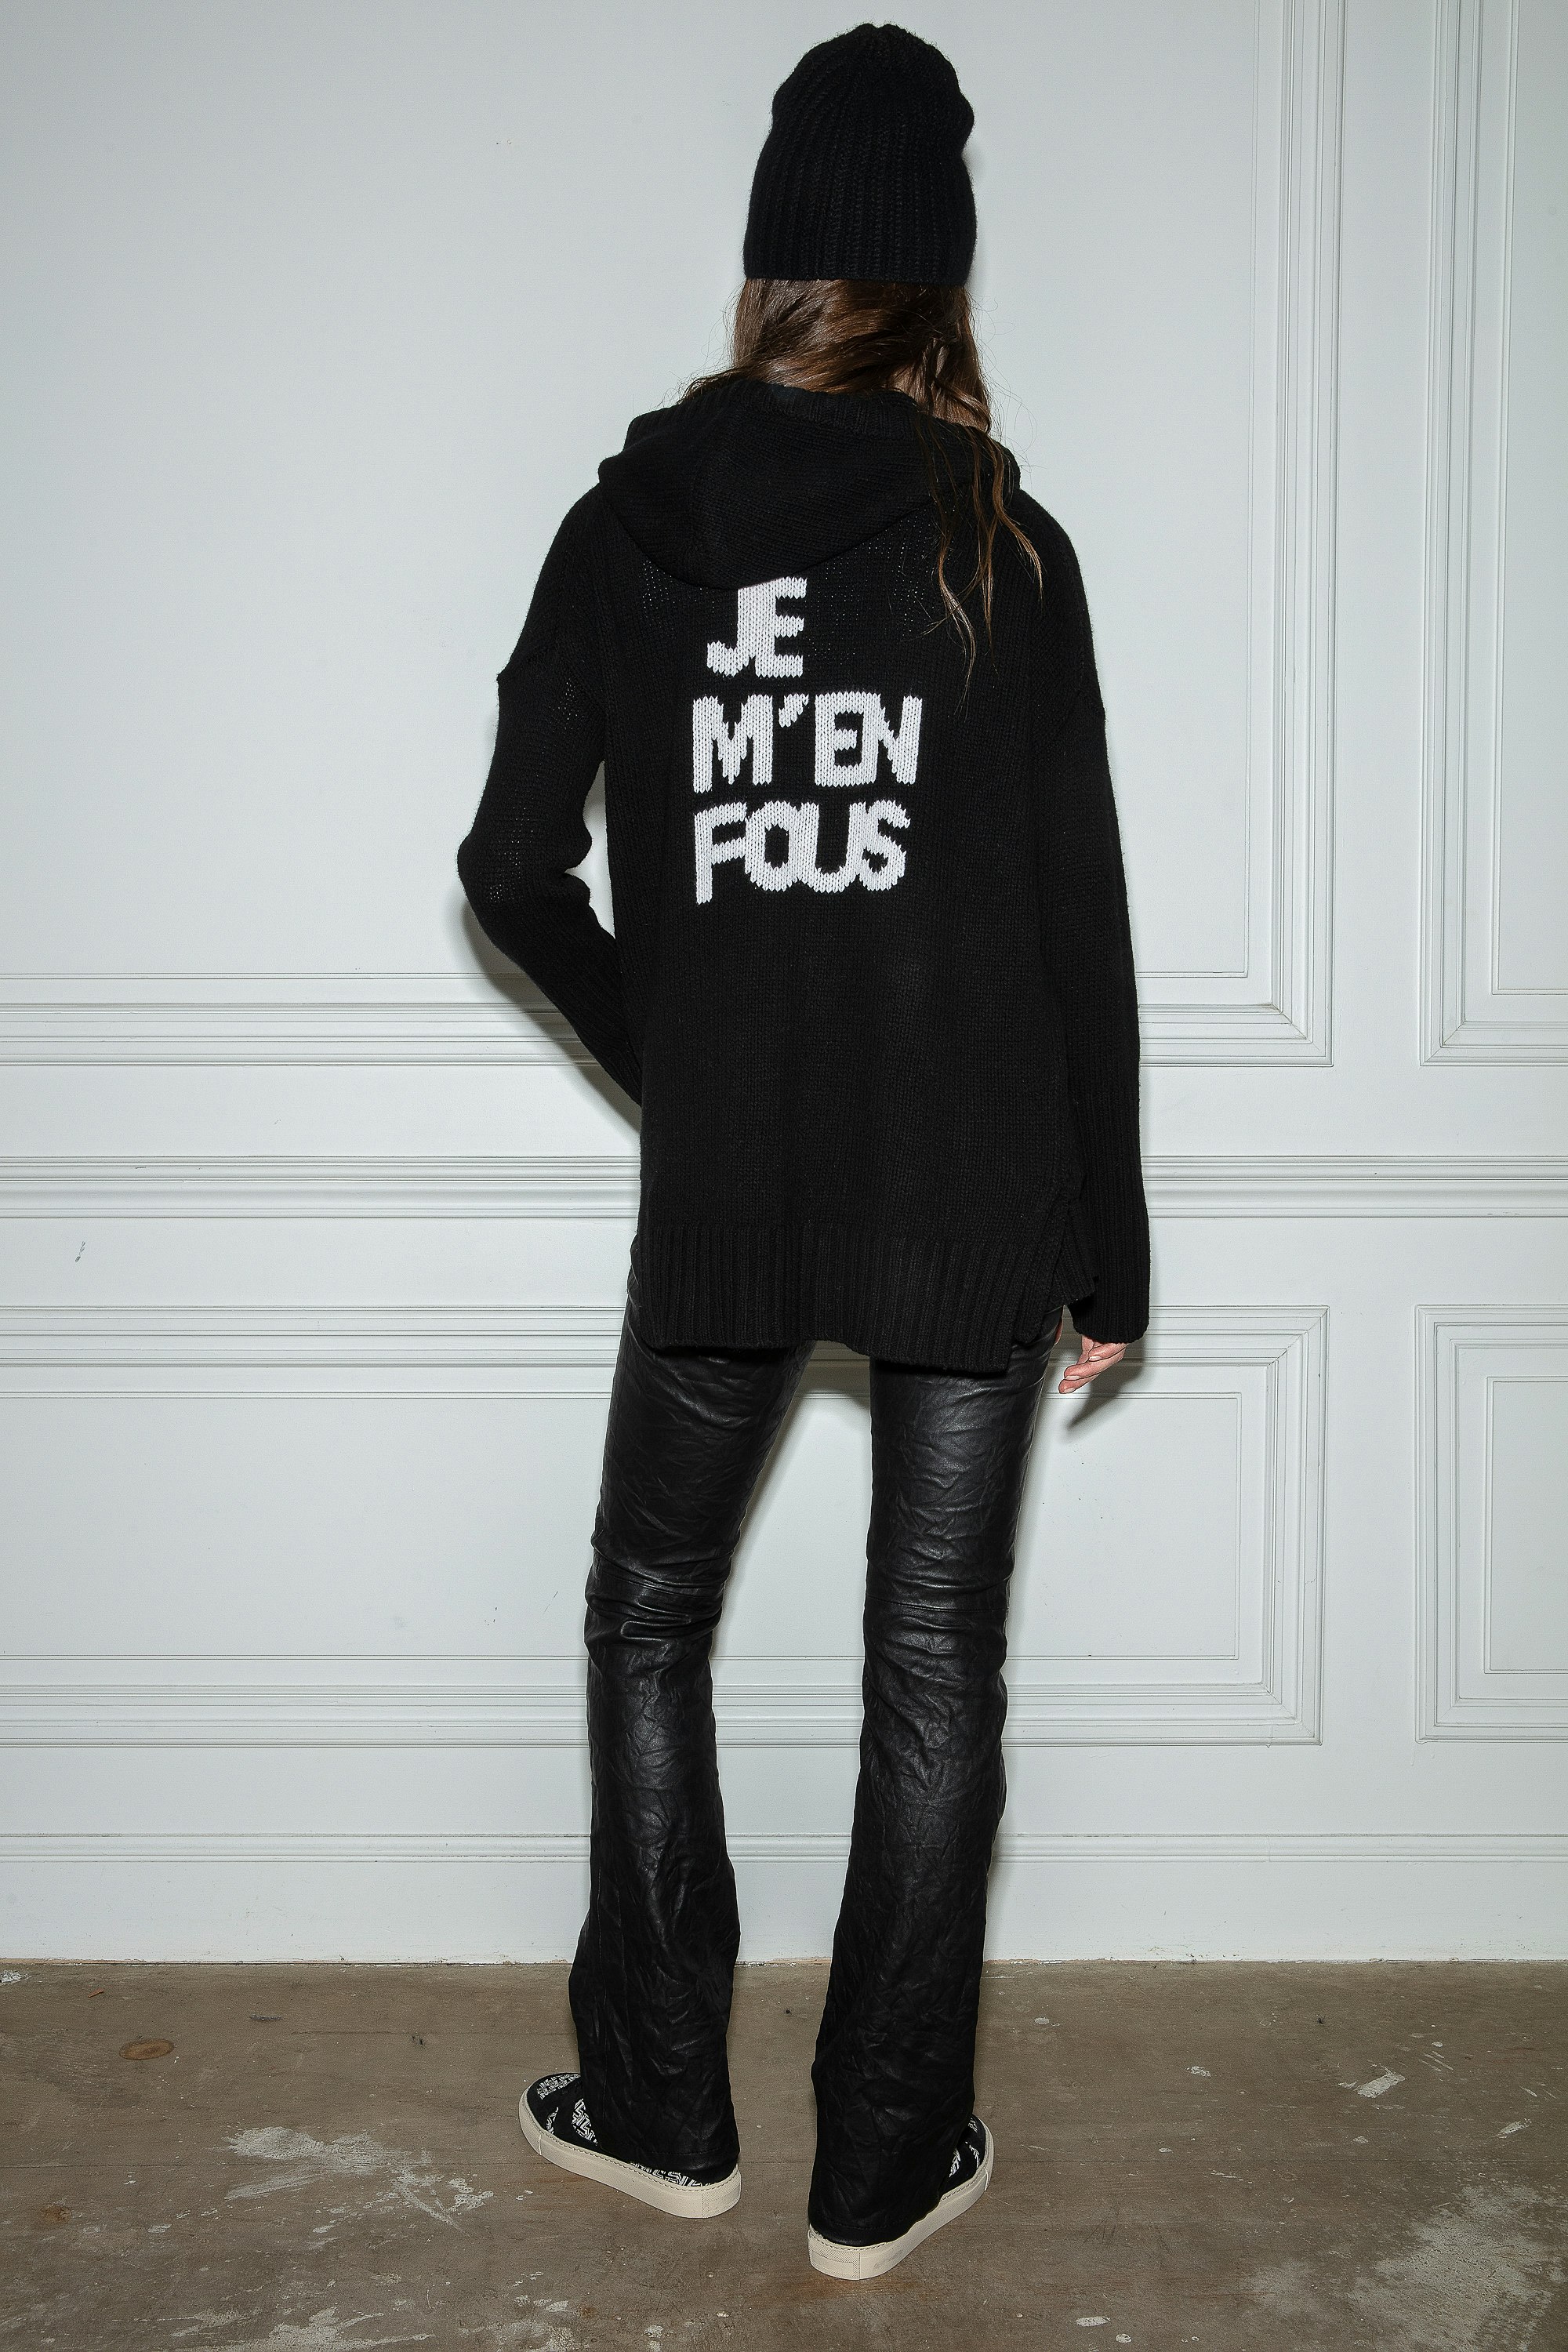 Strickjacke Salma  Schwarze Damen-Strickjacke mit Reißverschluss, Kapuze und der Botschaft „Je m'en fous“ auf dem Rücken